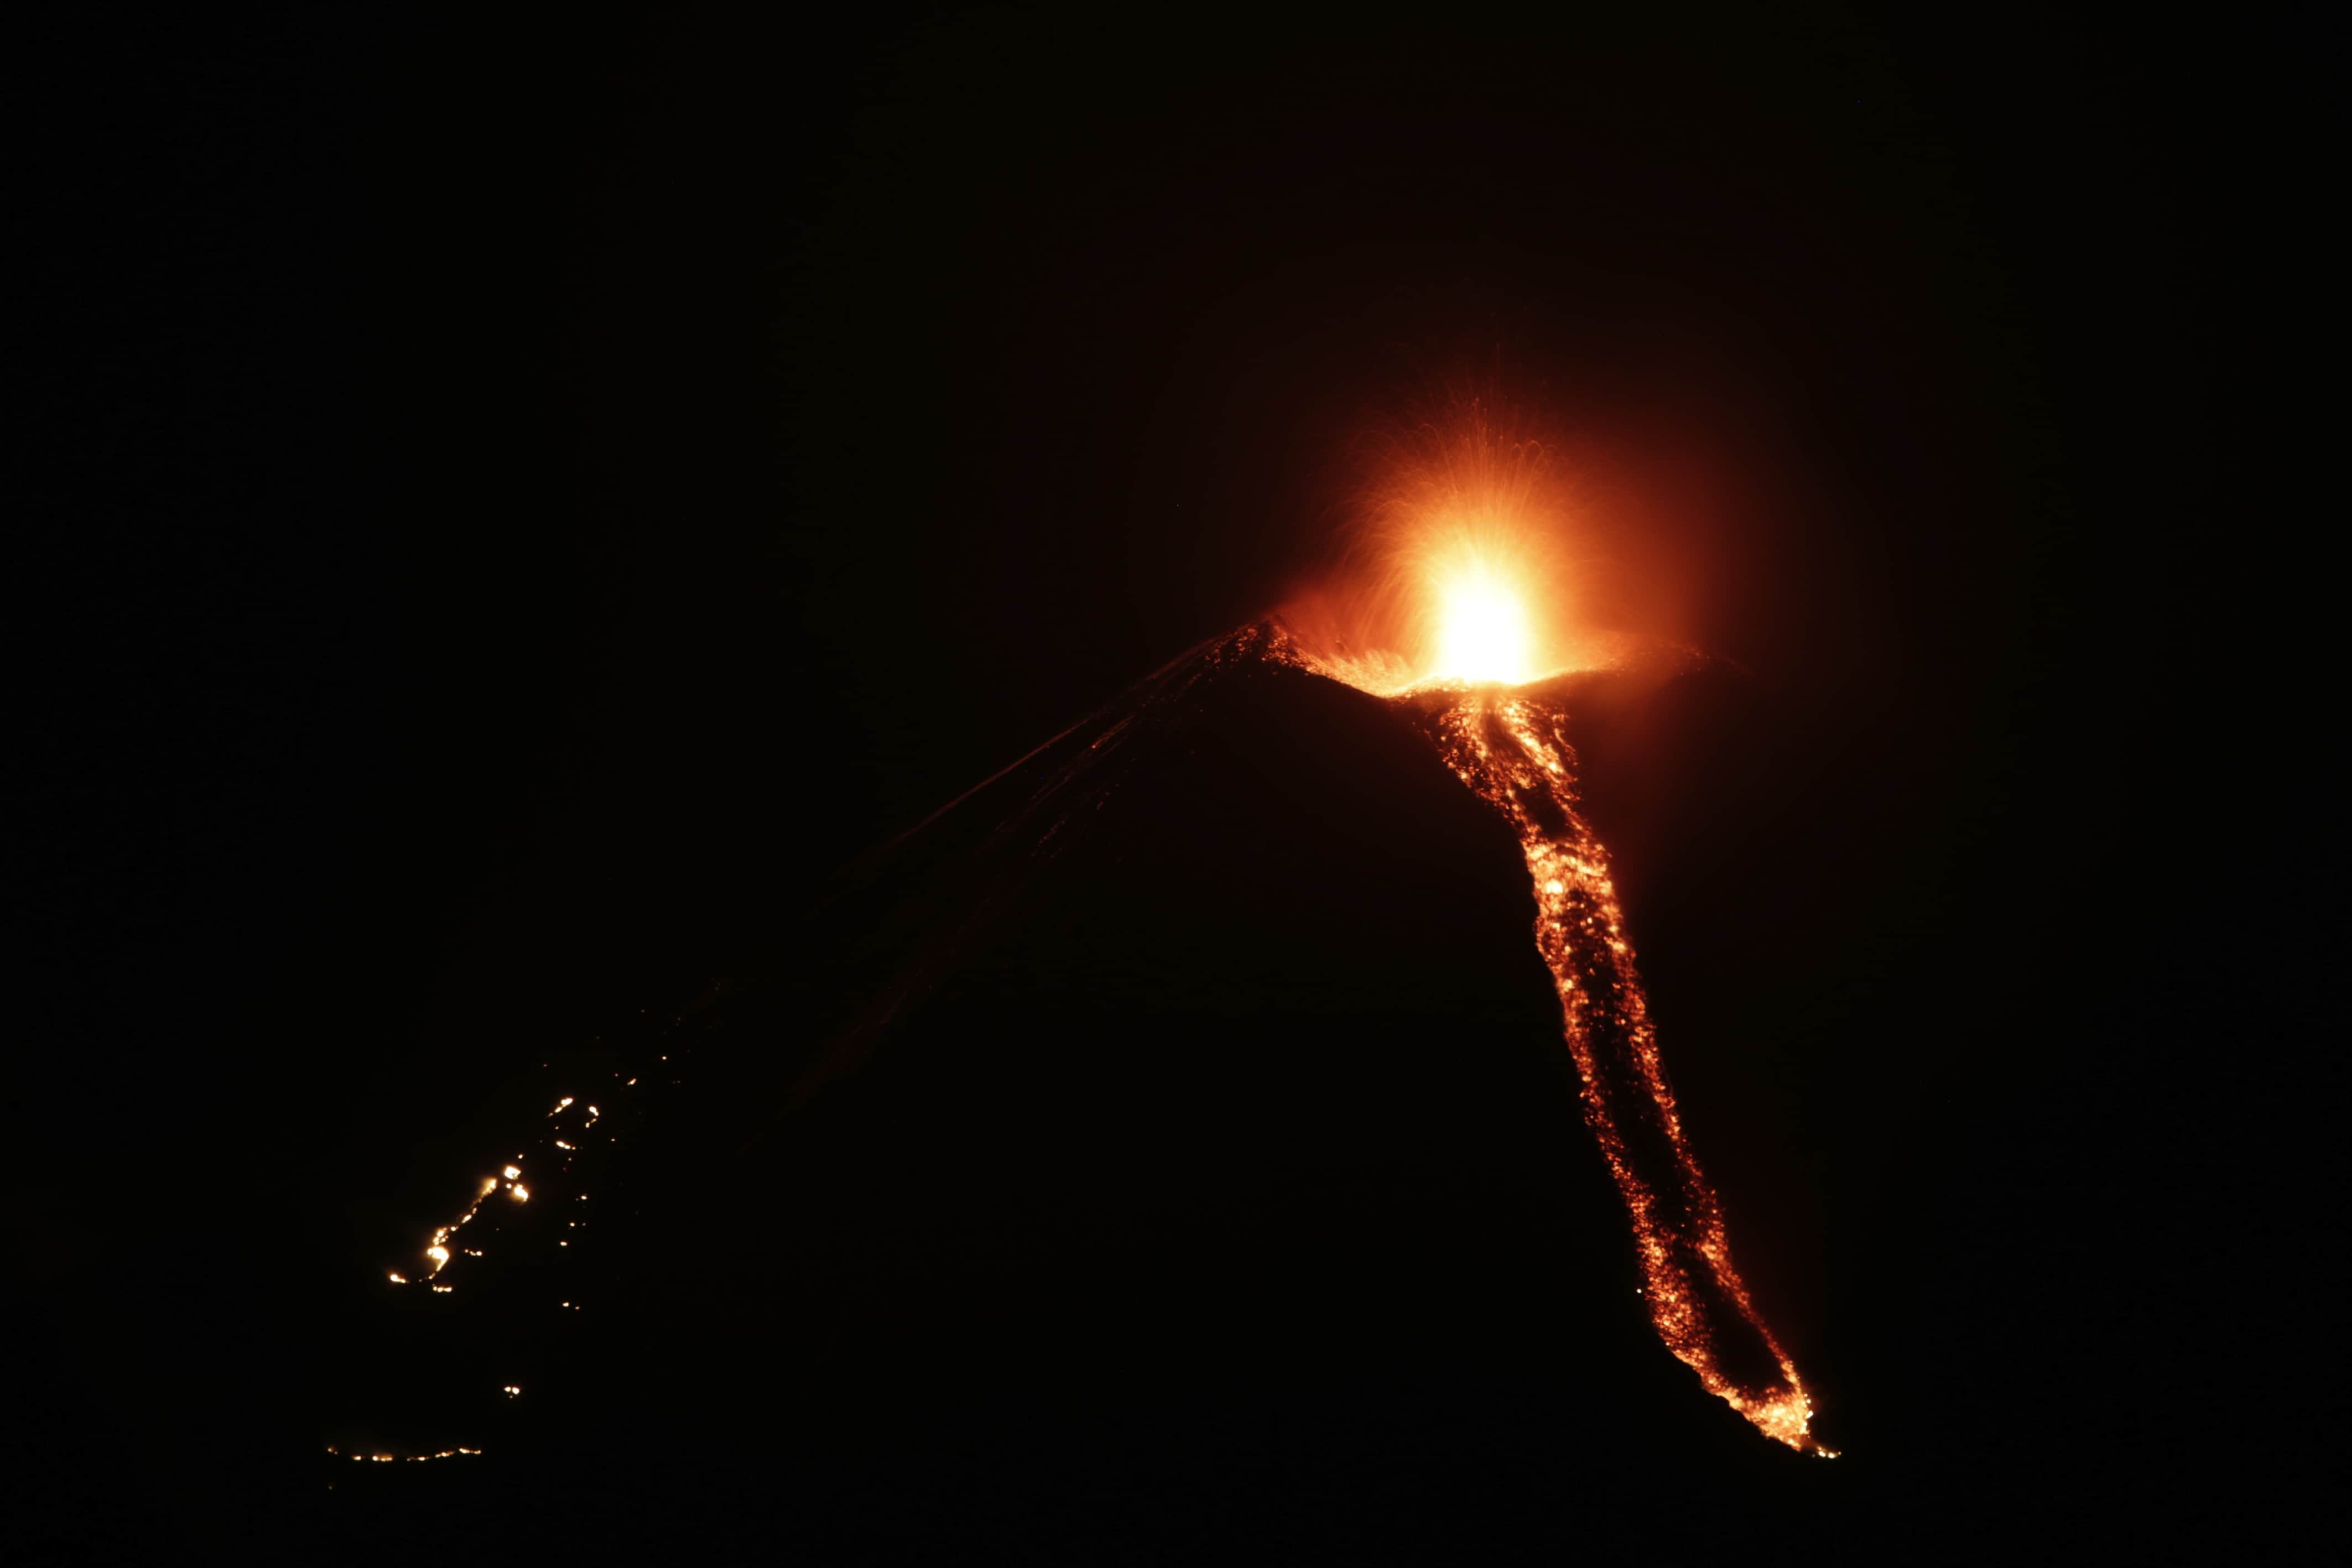 Momotombo Volcano